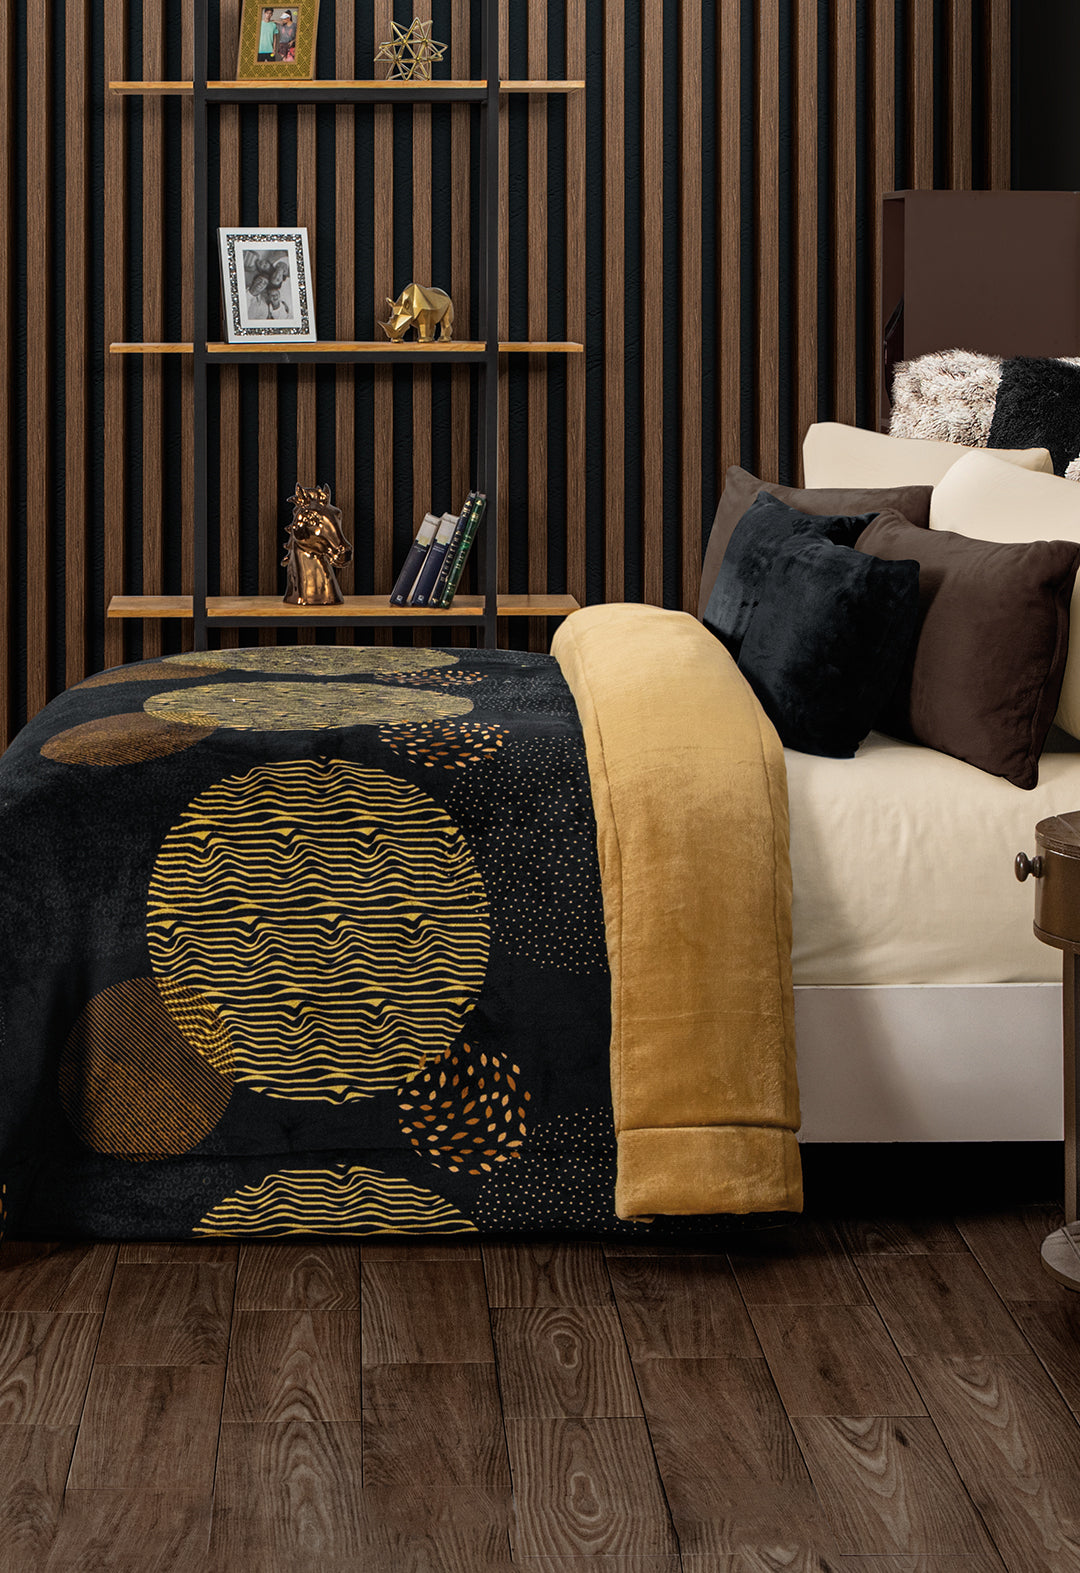 Cobertor Cobre, Es un hermoso cobertor con un diseño moderno de figuras circulares de tonos cobre y fondo negro